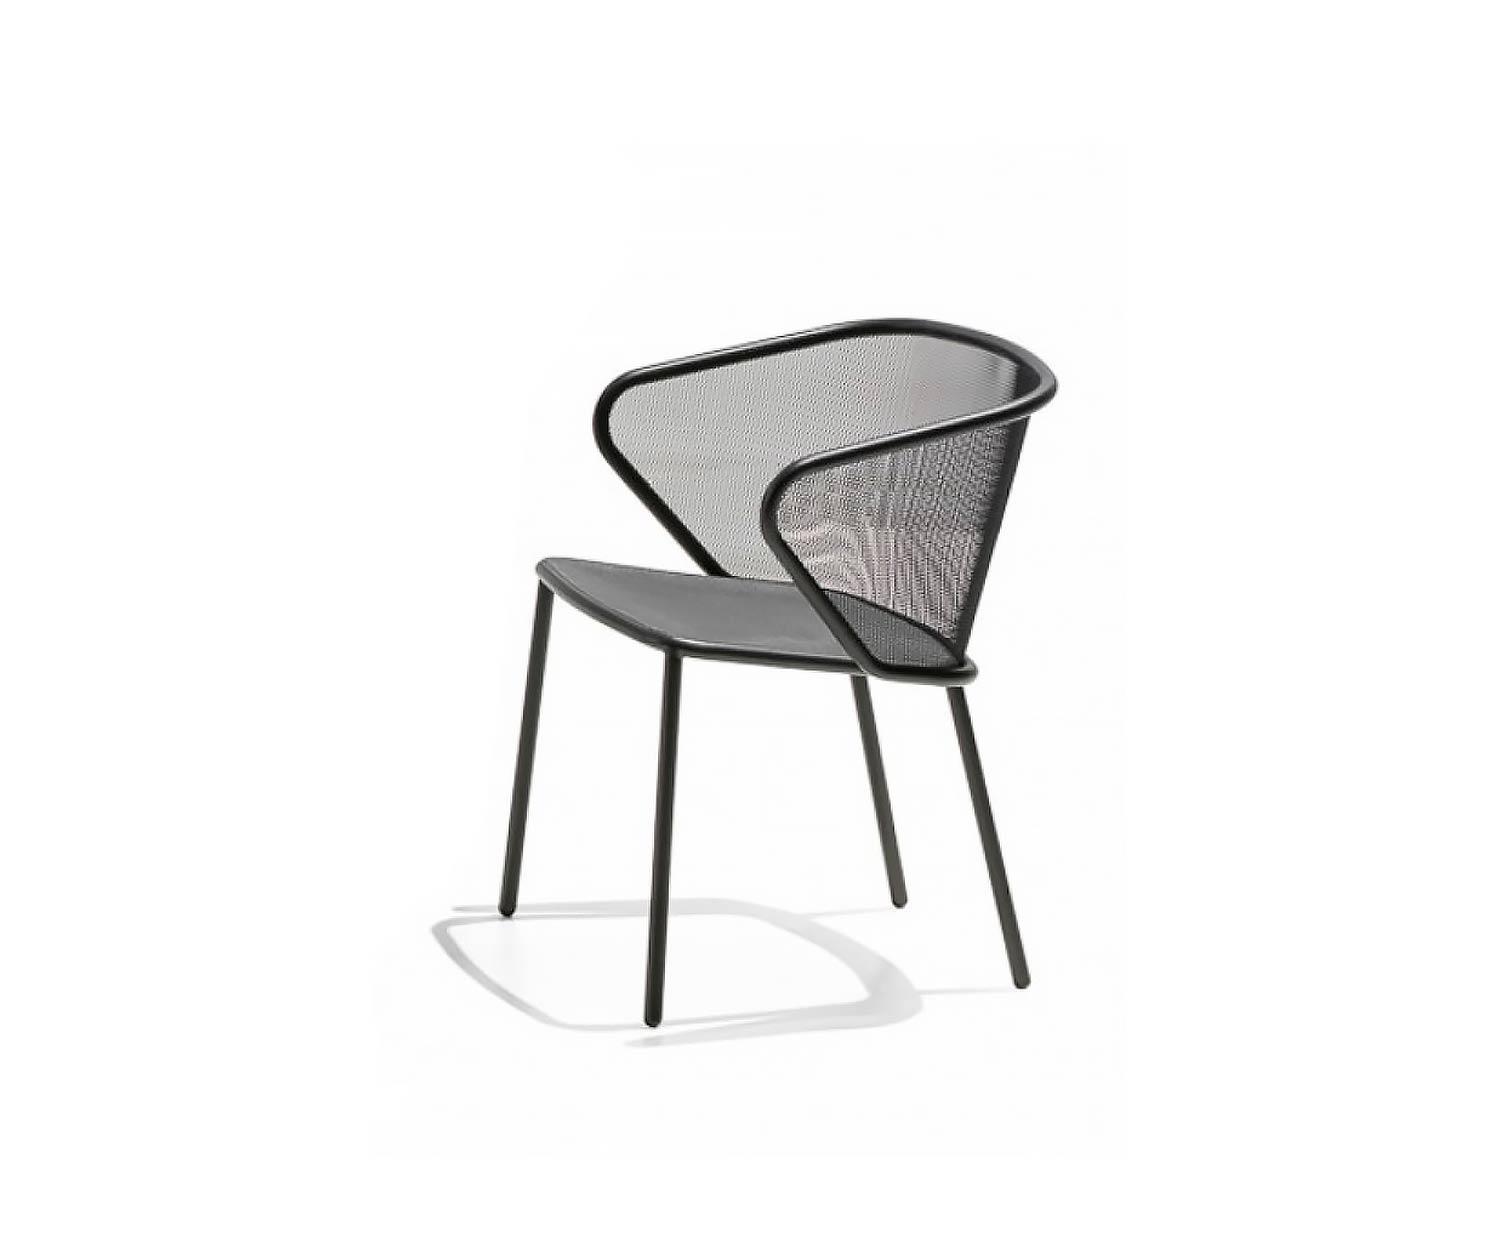 Exclusieve Todus Condor design fauteuil met antraciet onderstel